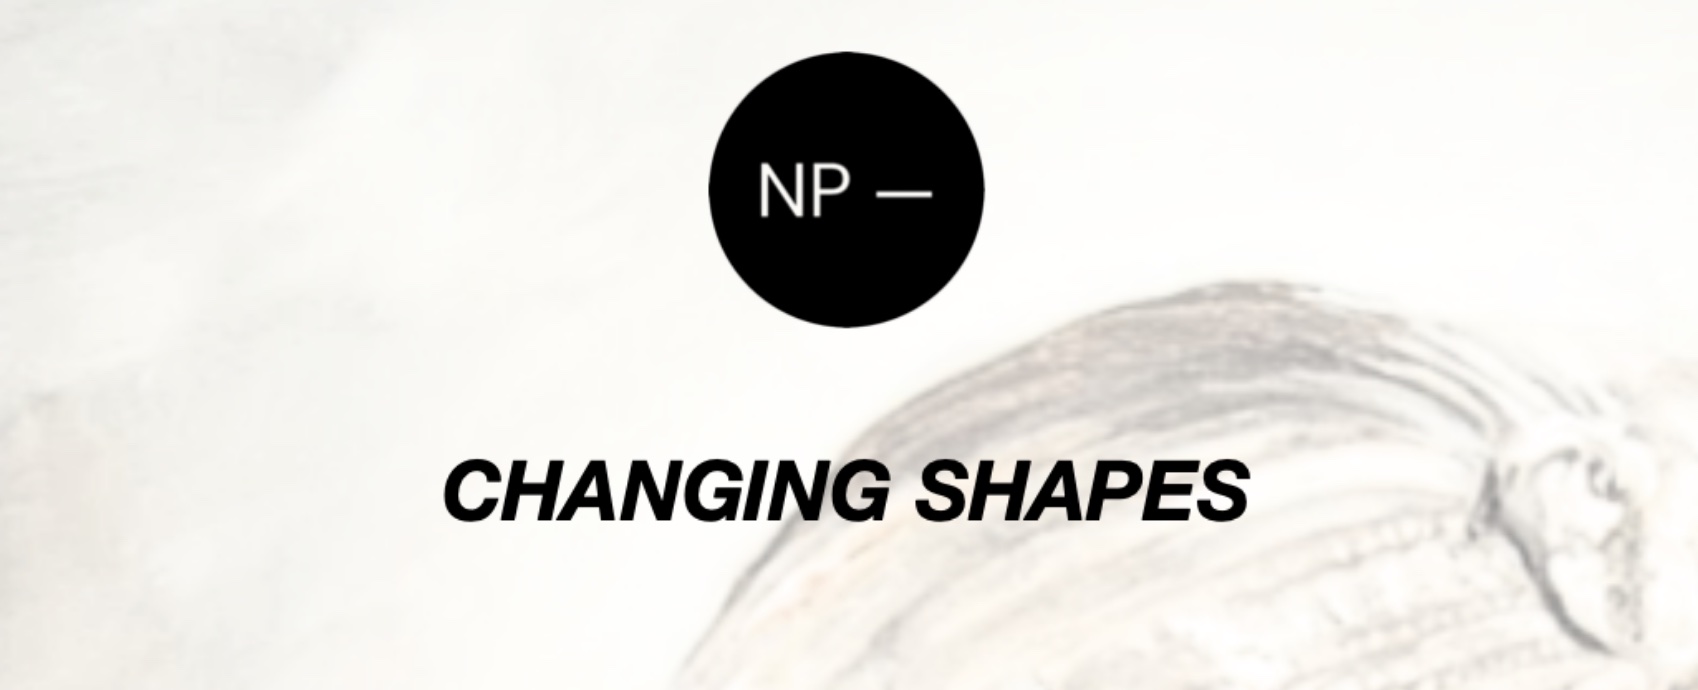 Changing Shapes, sabato 21 ottobre dalle 18:00 alle 21:00 l'inaugurazione all'NP-ArtLab di Padova (Vicolo dell'Osservatorio 1/C).